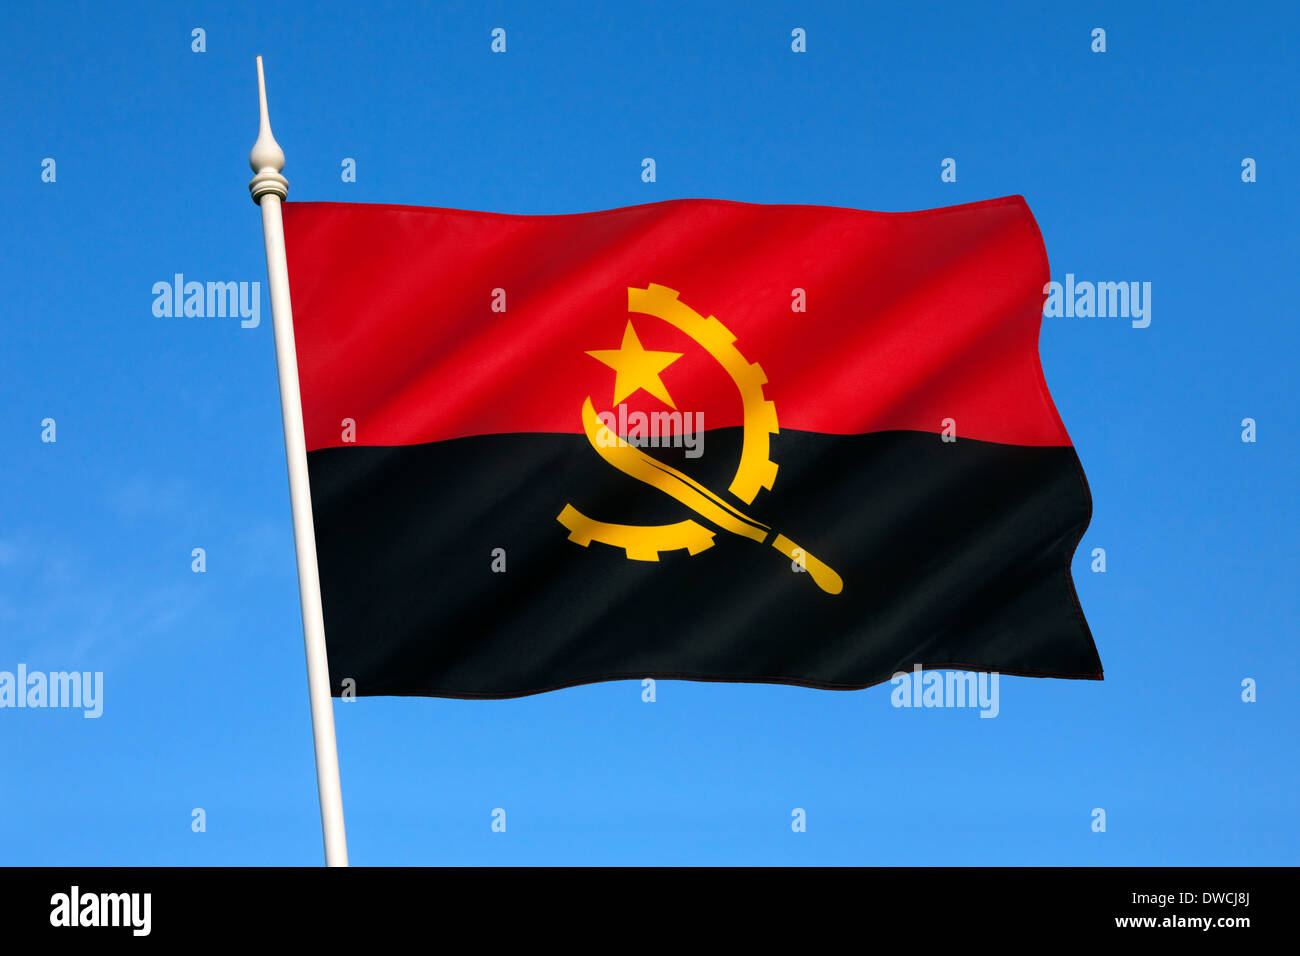 Le drapeau national de l'Angola a été utilisé lors de l'indépendance le 11 novembre 1975. Banque D'Images